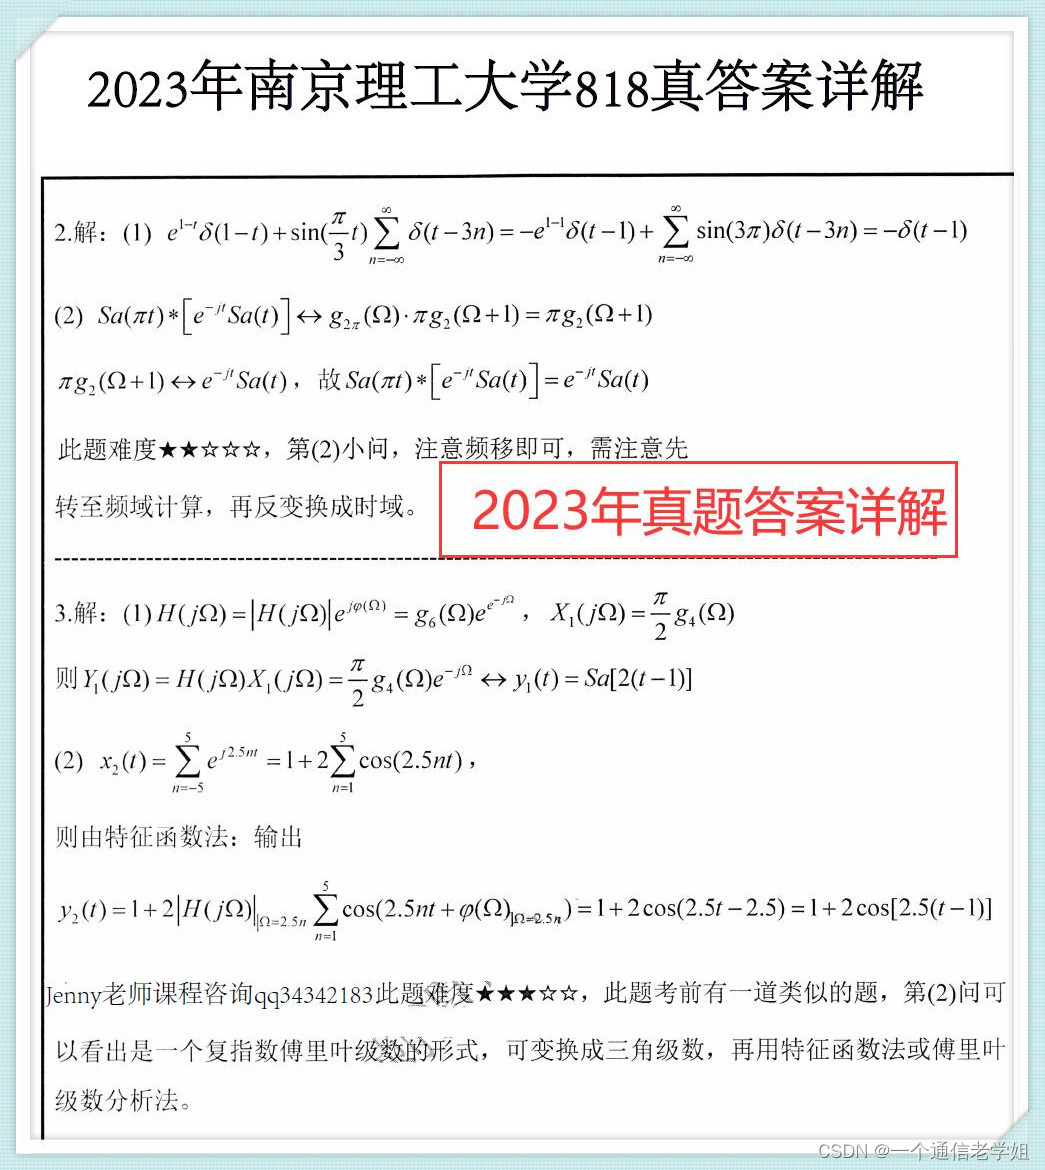 2023南京理工大学通信工程818信号系统及数电考试大纲